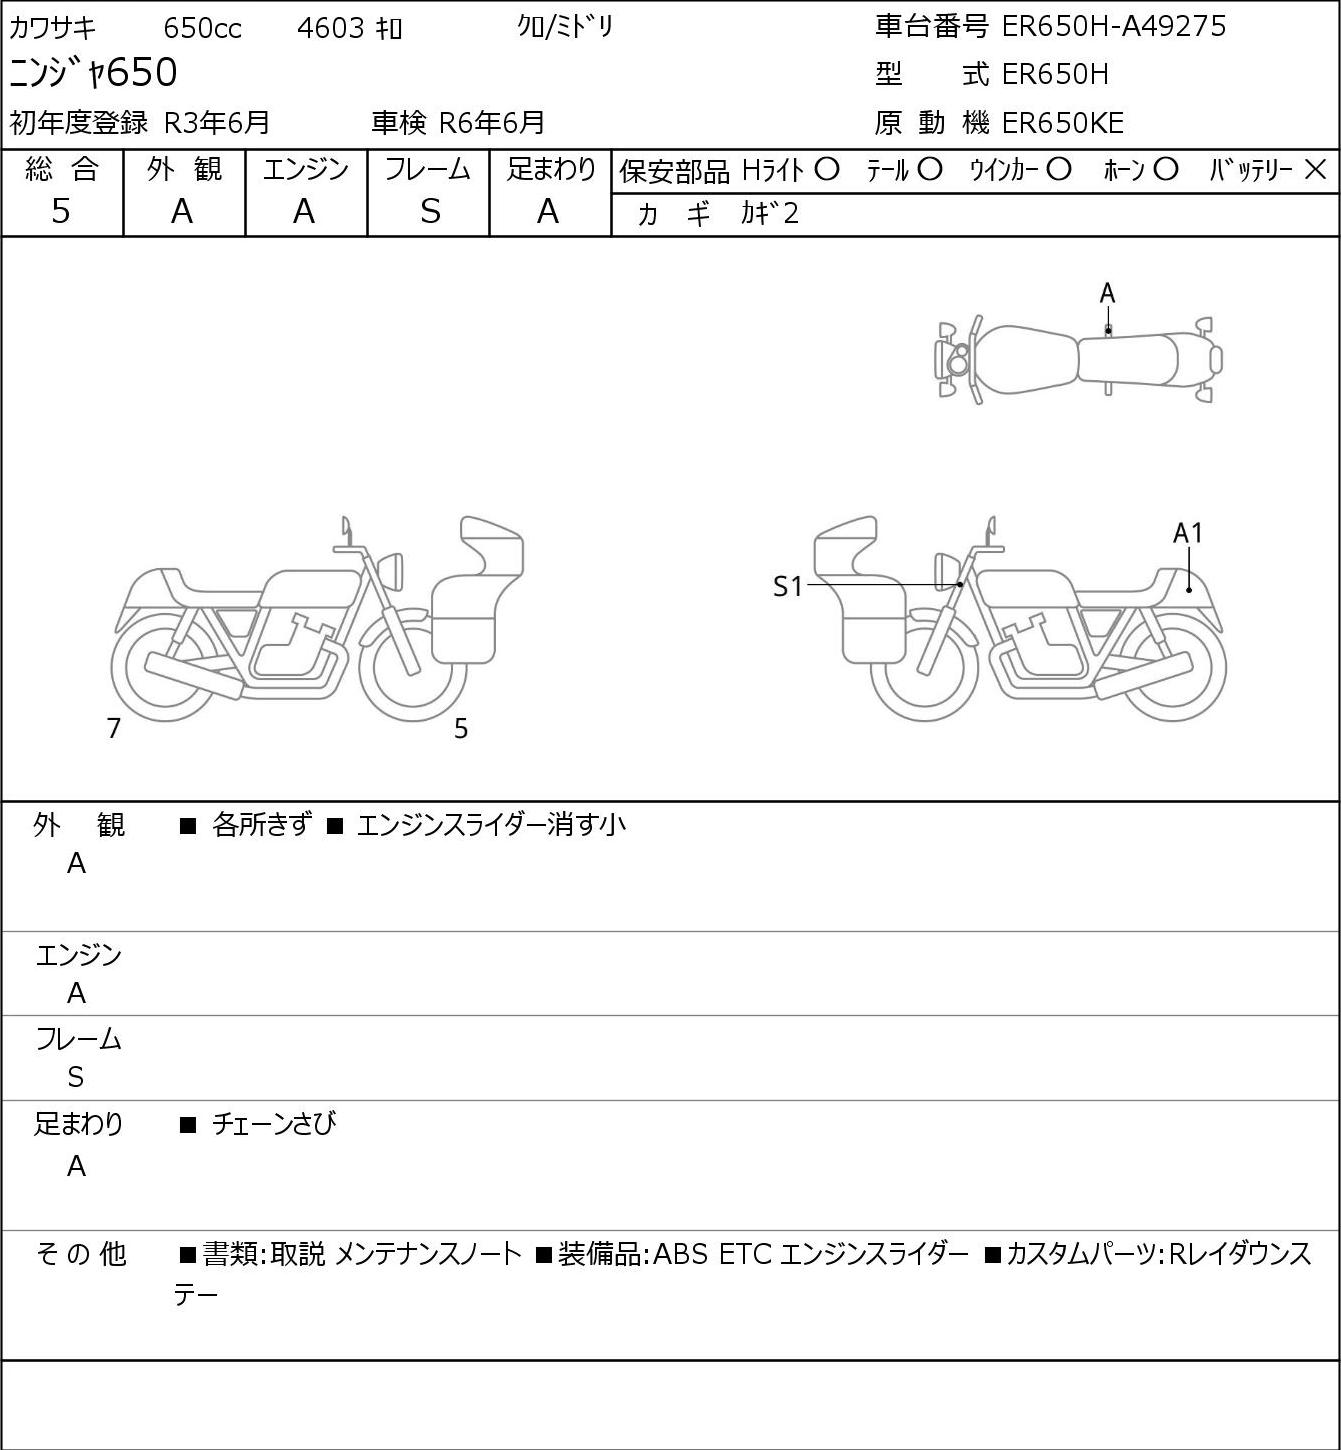 Kawasaki NINJA 650 ER650H 2021г. 4603